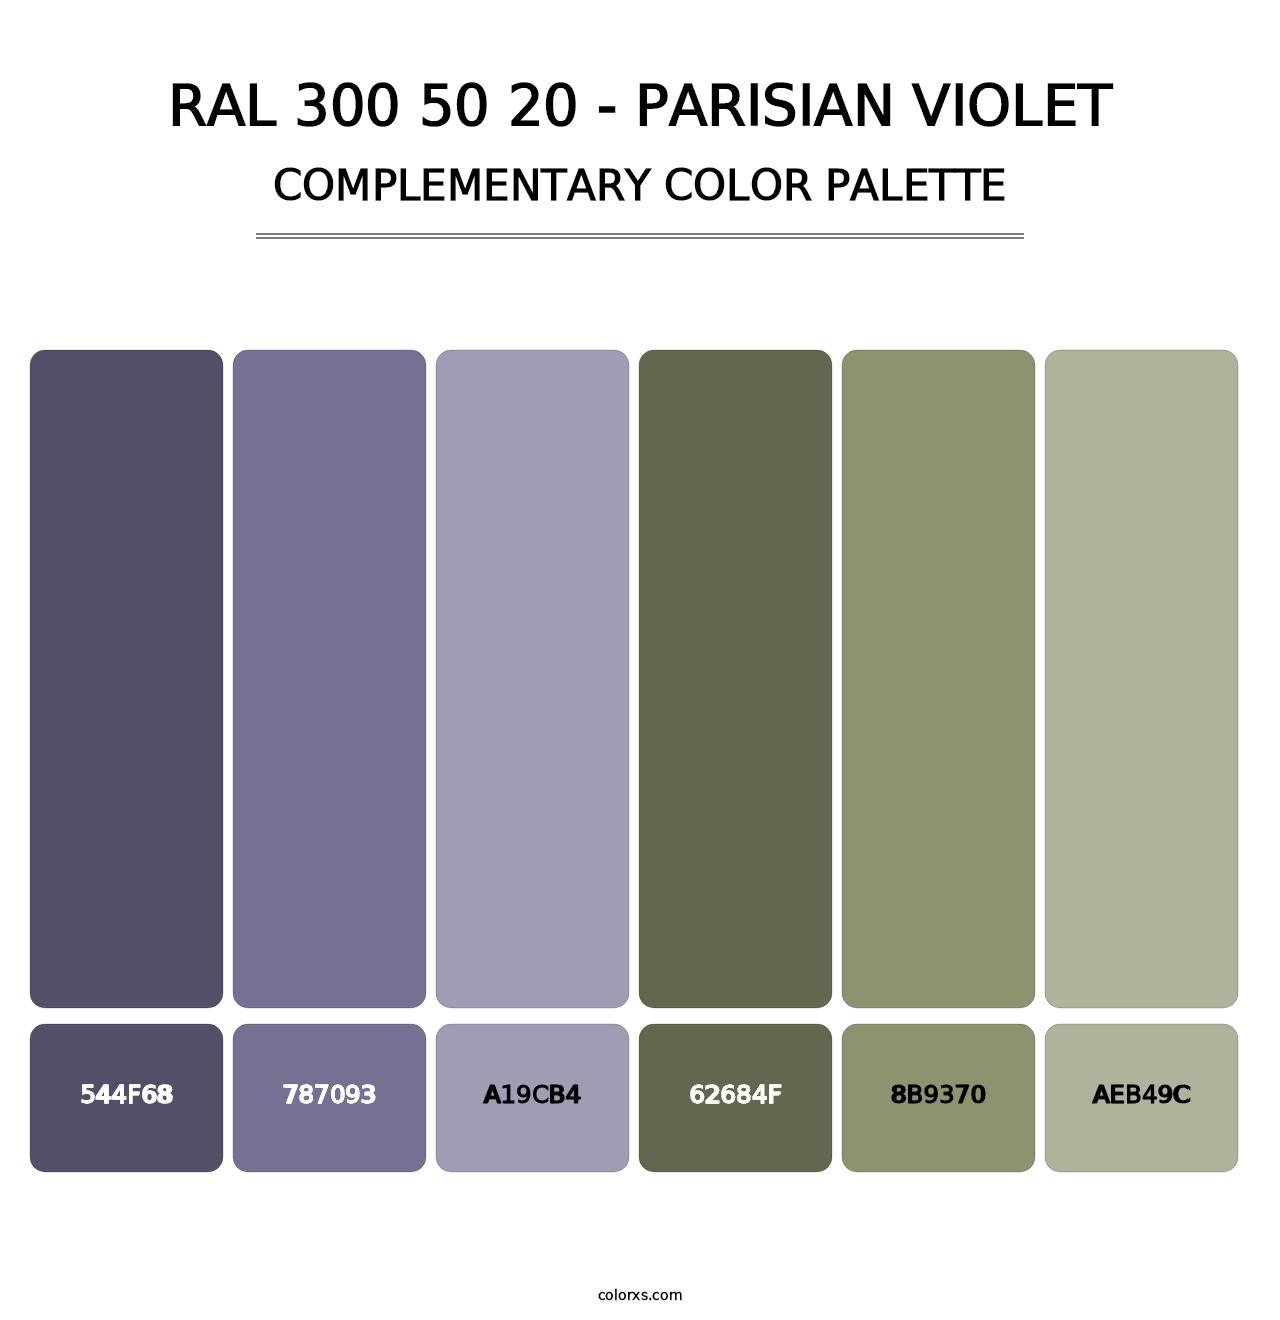 RAL 300 50 20 - Parisian Violet - Complementary Color Palette